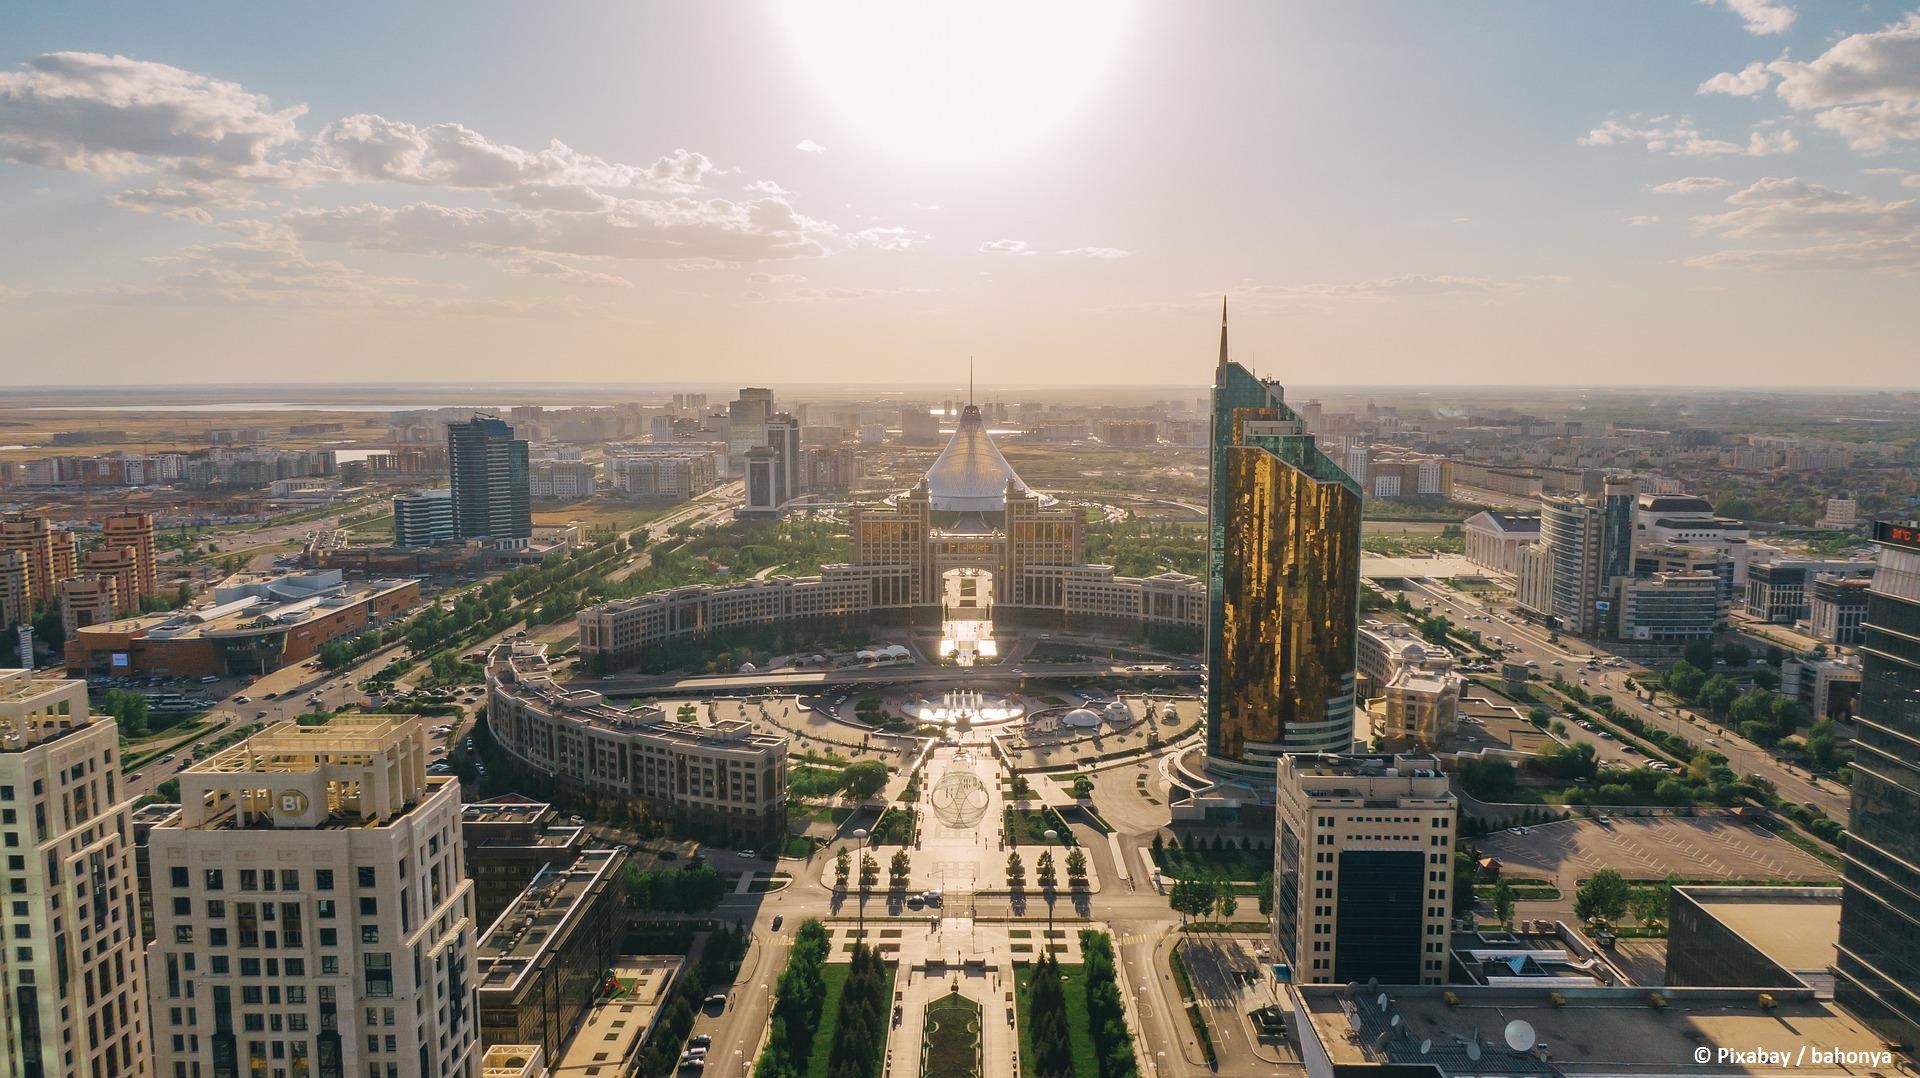 Kasachstan hat mit einer Reihe ausländischer Unternehmen große Verträge abgeschlossen